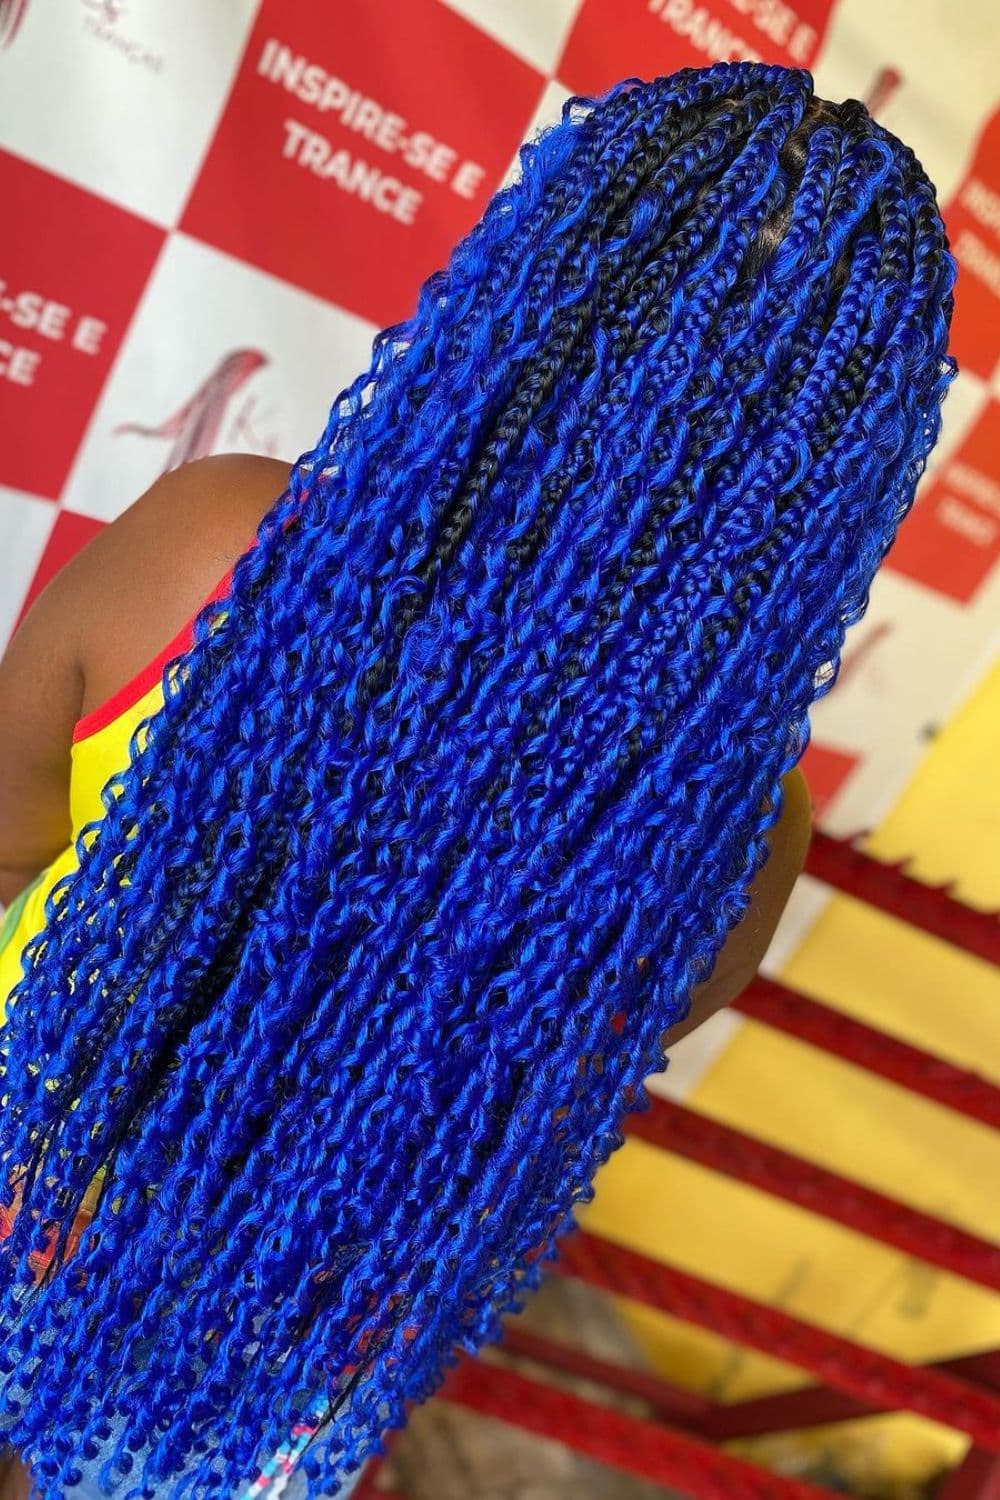 A woman with blue goddess braids.